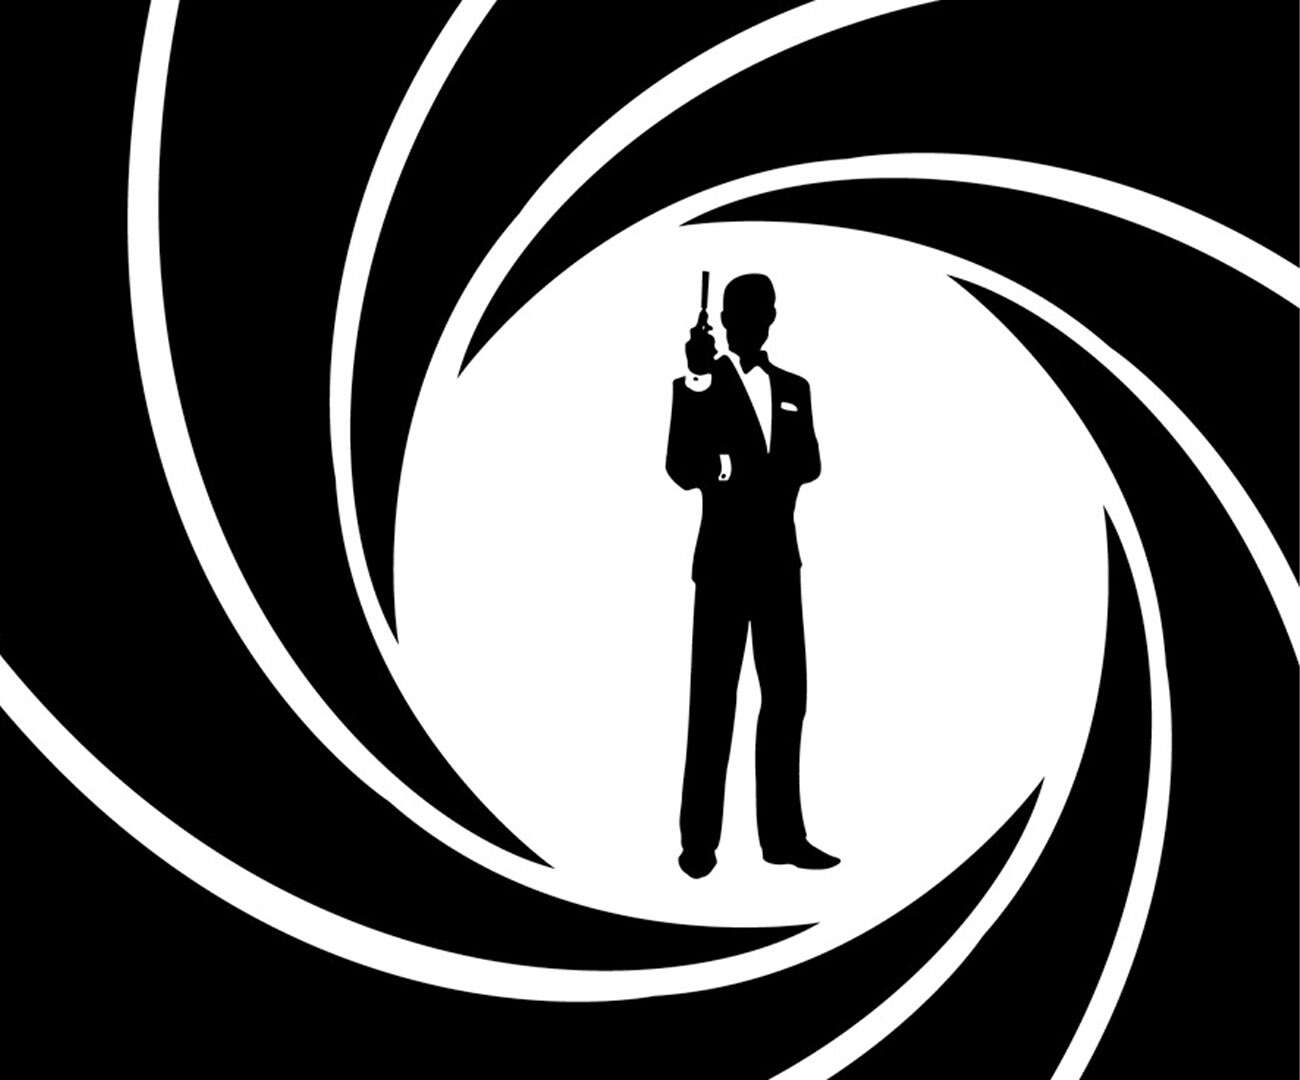 007, bond